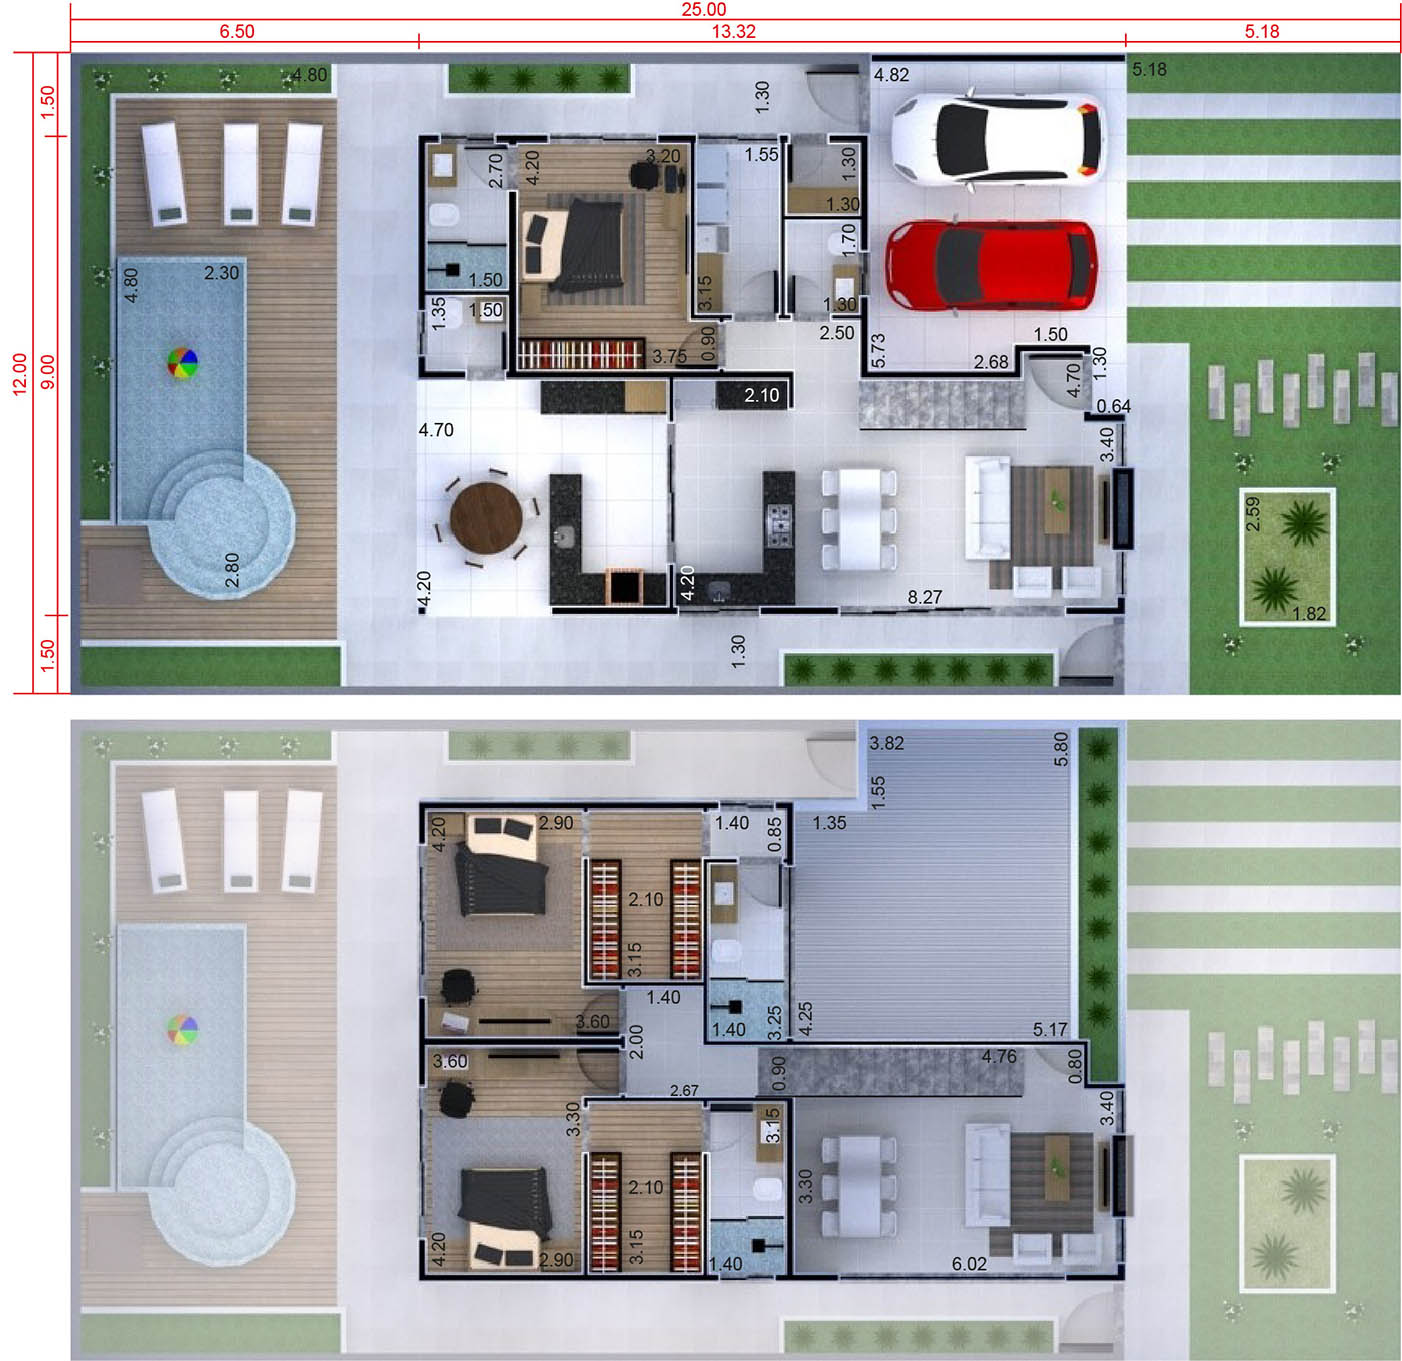 Floor plan with gourmet kitchen12x25